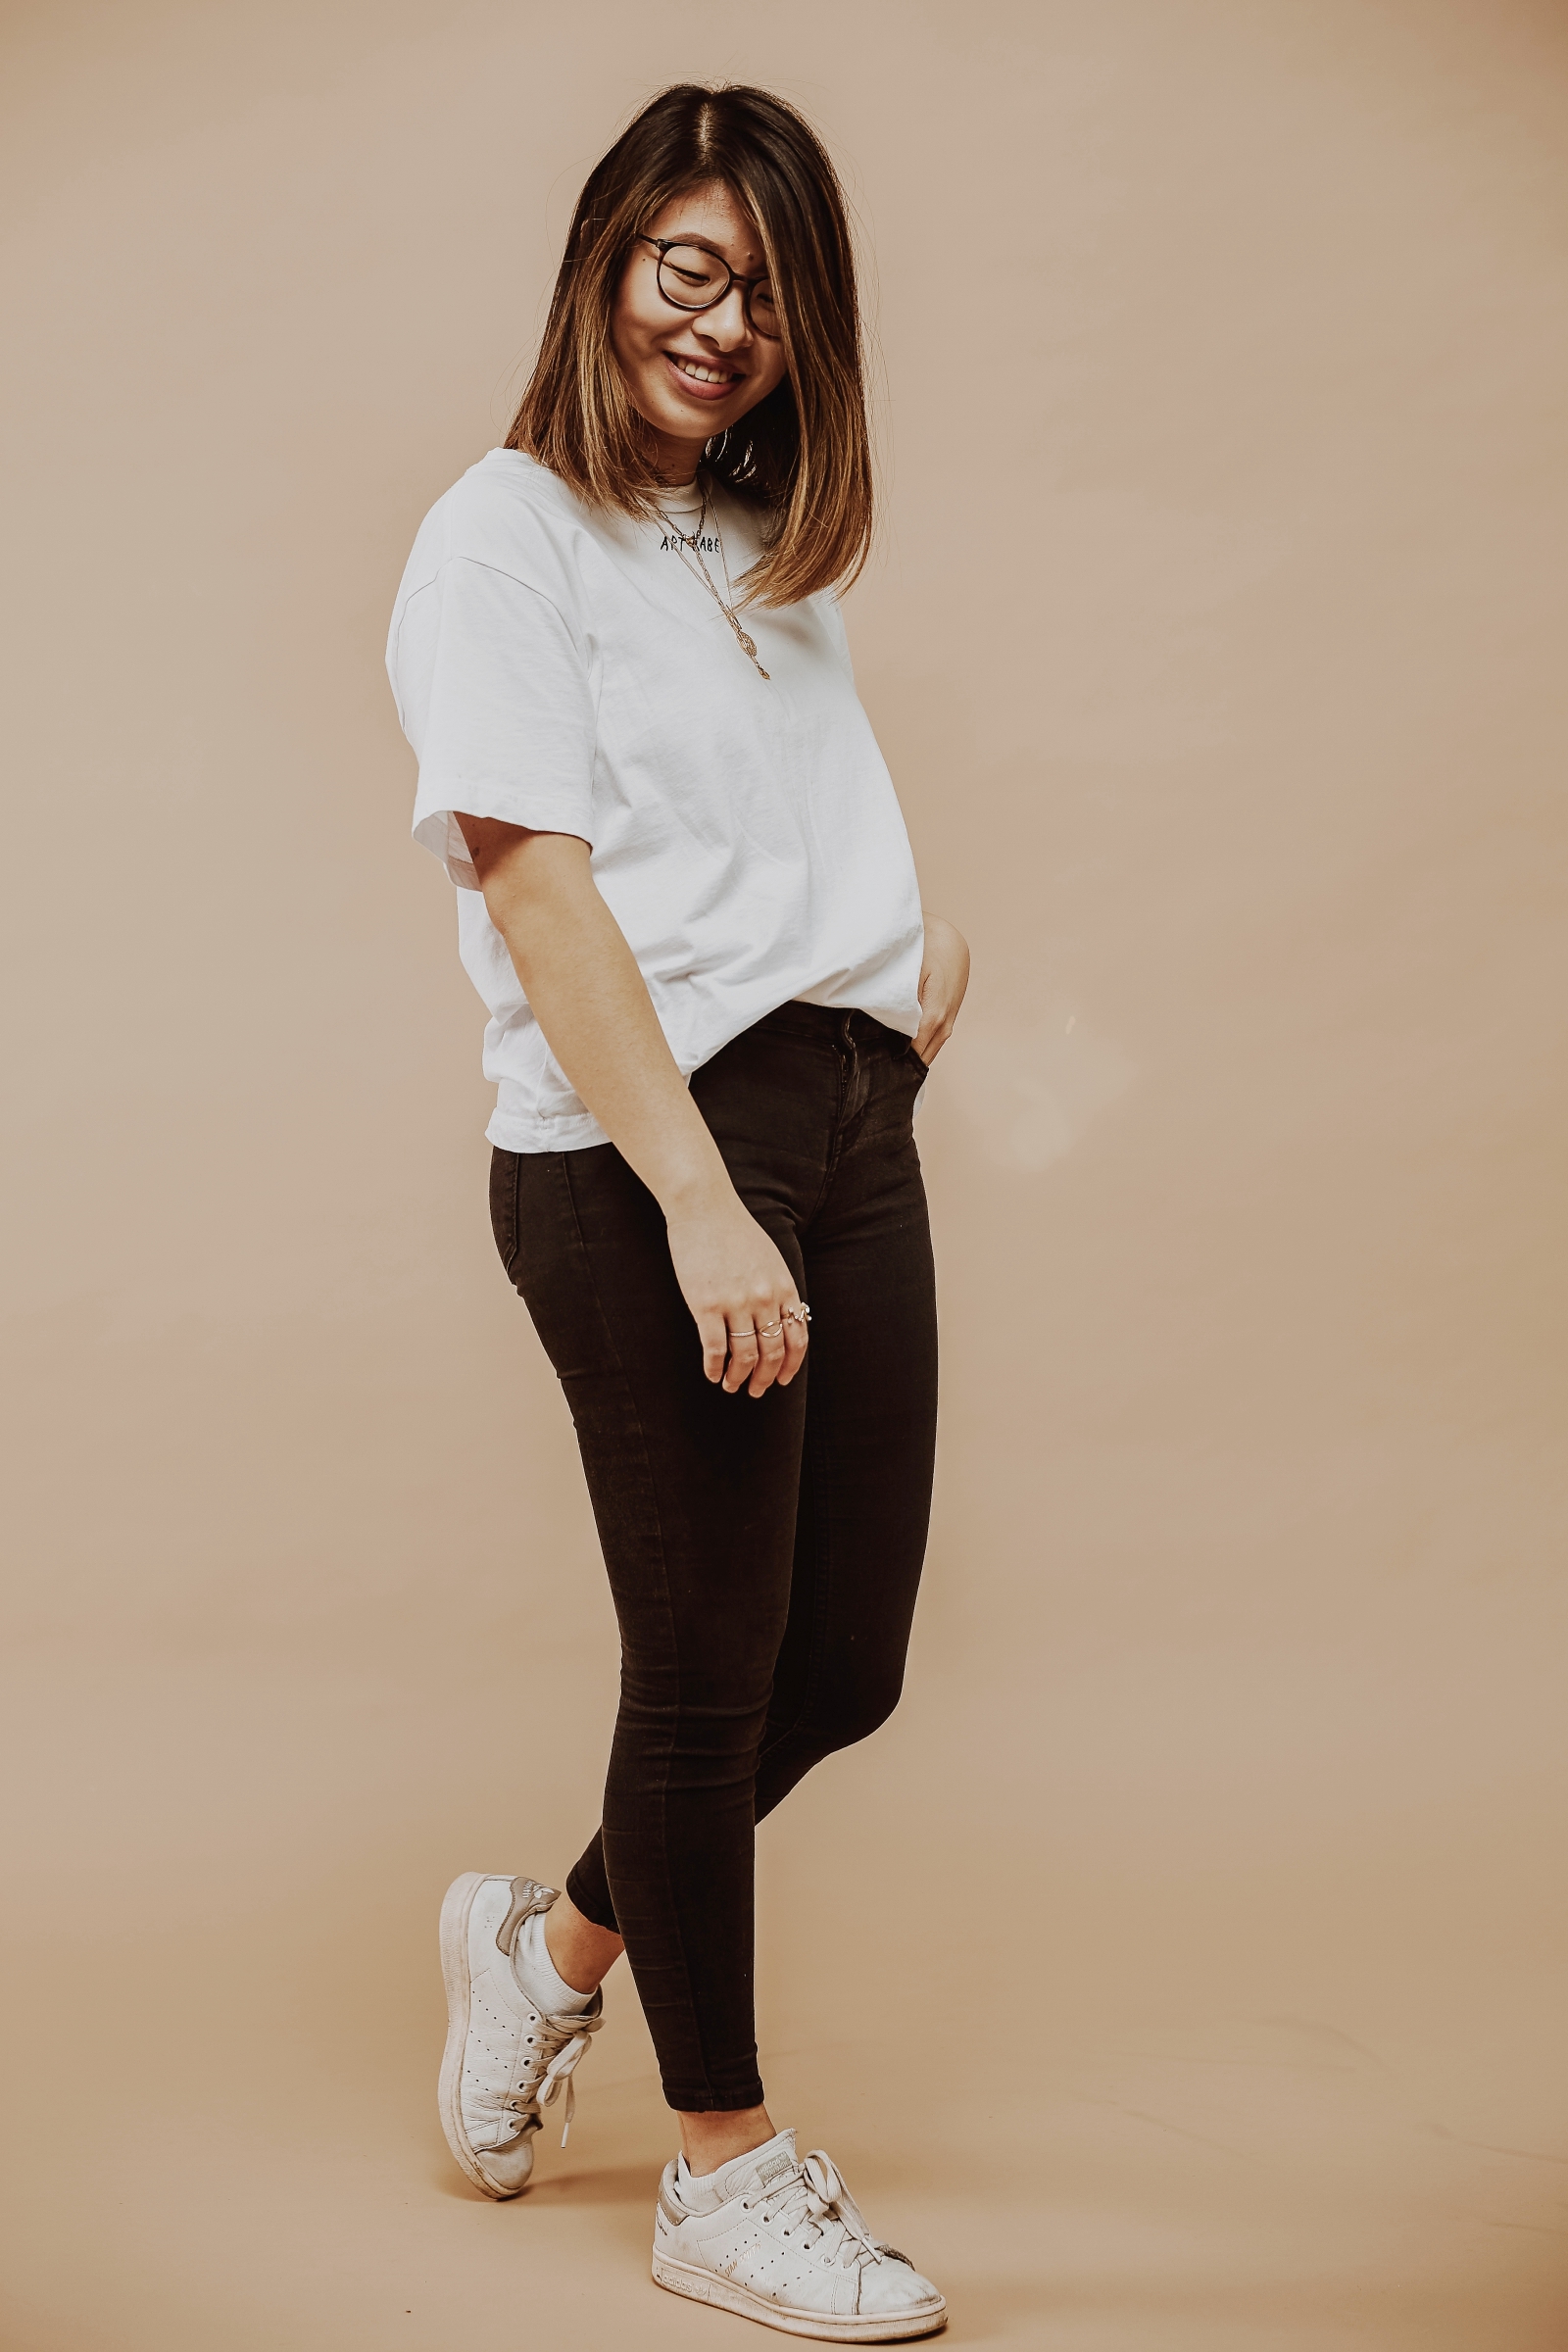 inhighfashionlaune | Jeans Guide: die perfekten Jeans für kleine Frauen